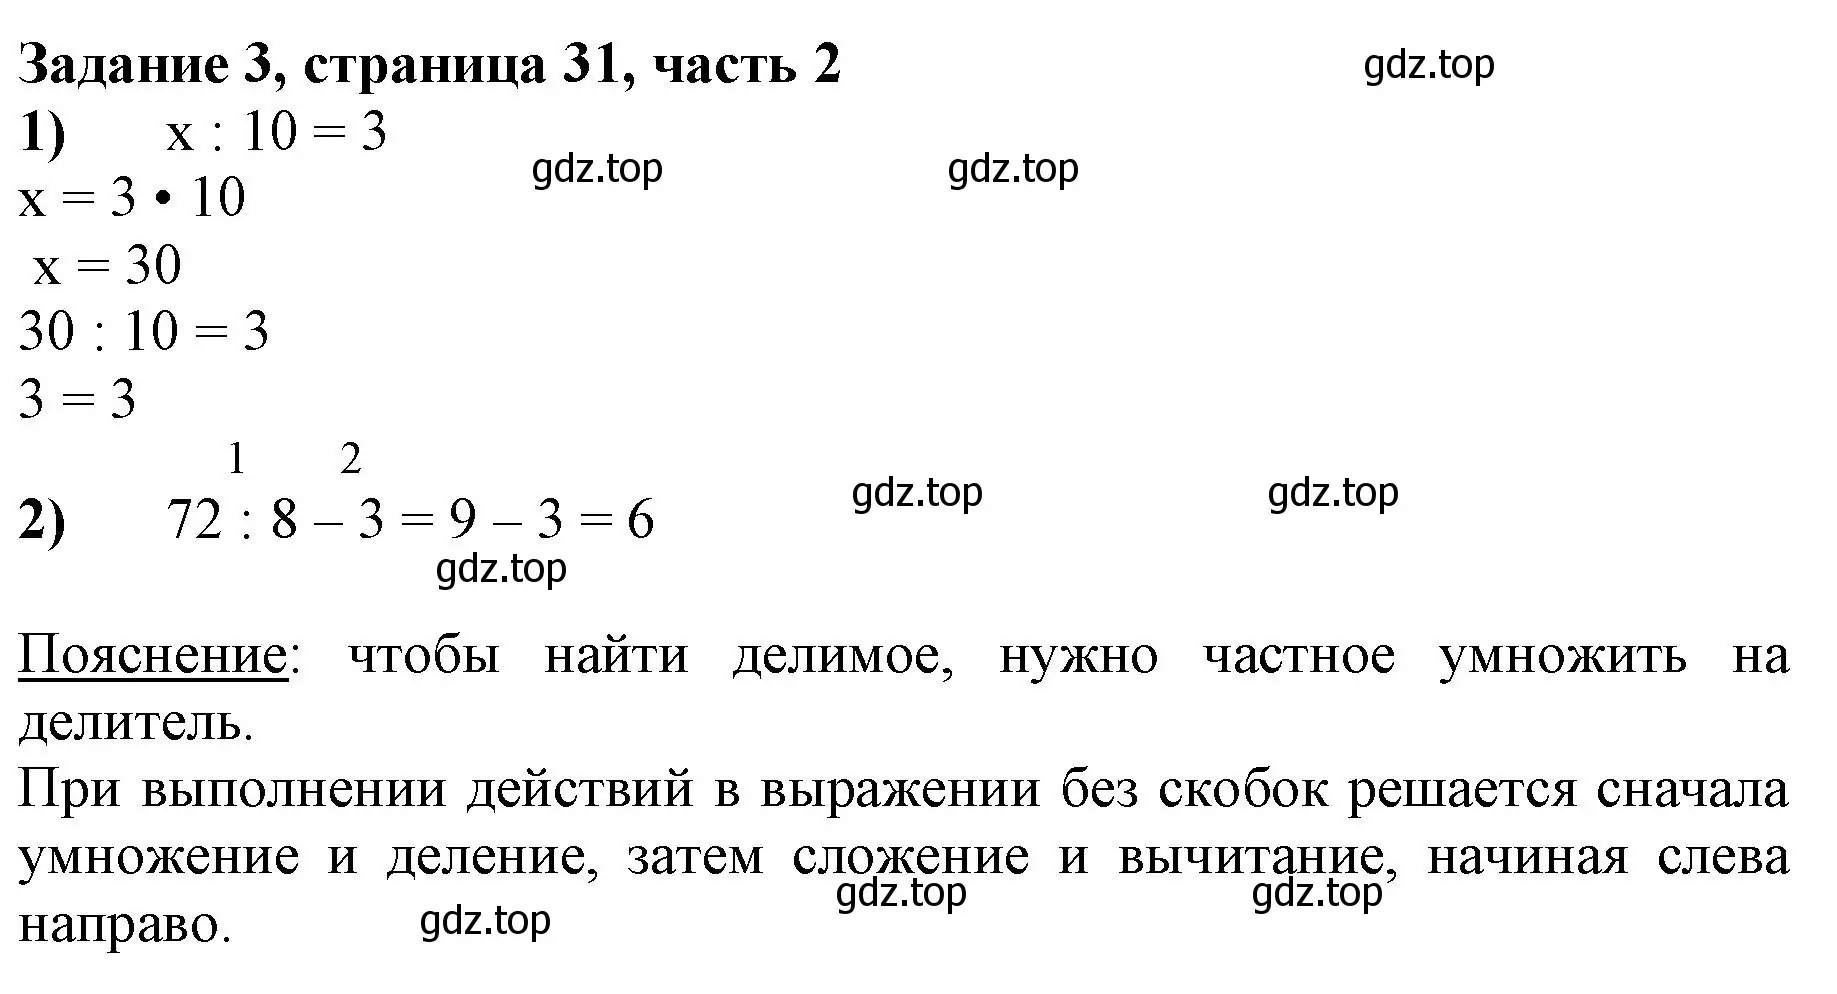 Решение номер 3 (страница 31) гдз по математике 3 класс Моро, Бантова, учебник 2 часть